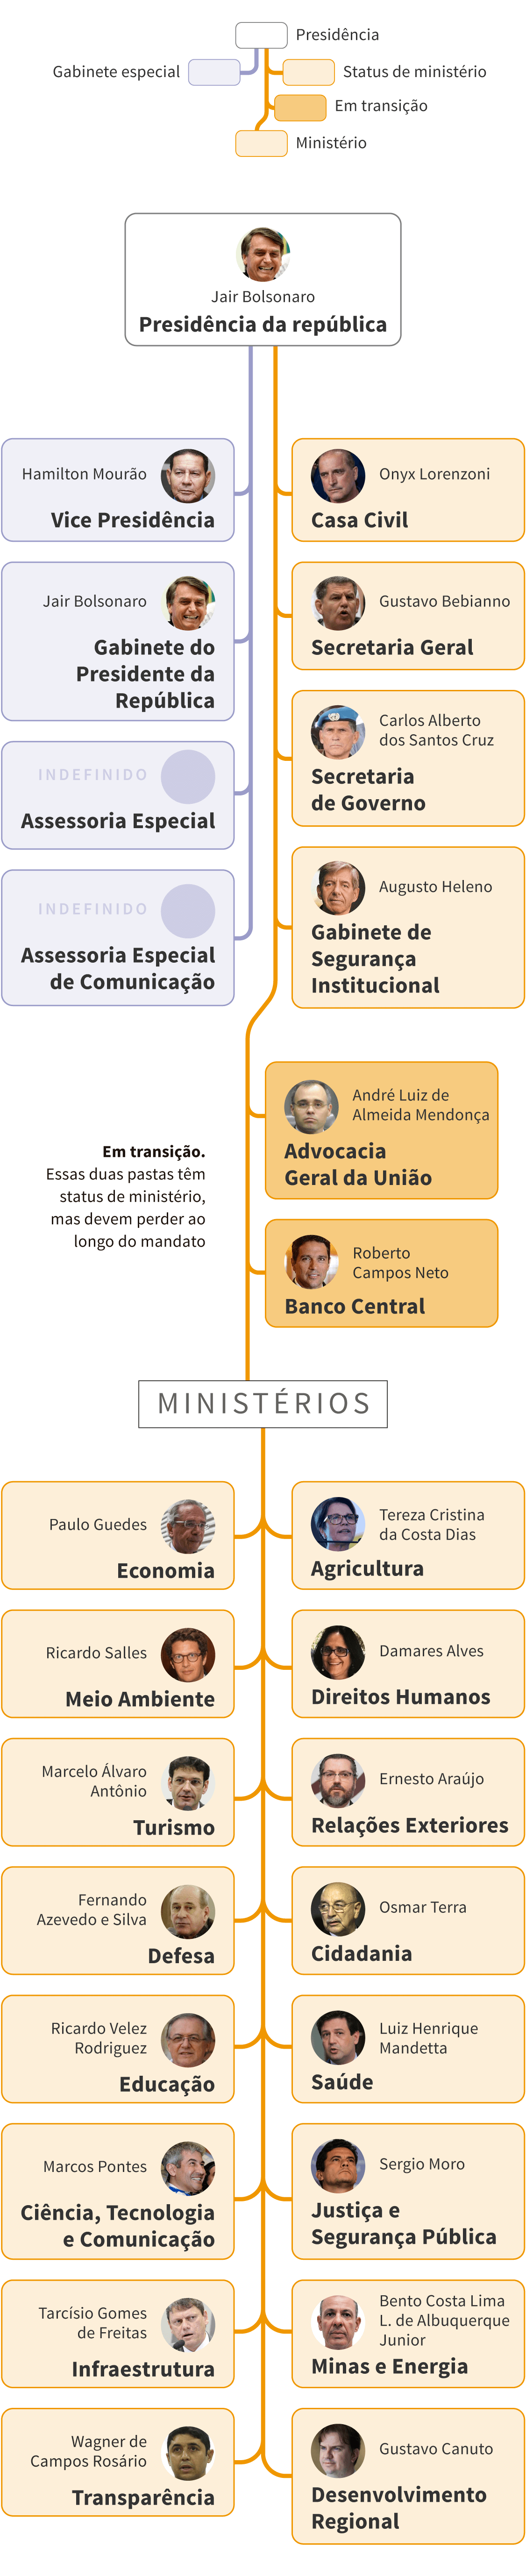 InfogrÃ¡fico: a estrutura do governo Bolsonaro